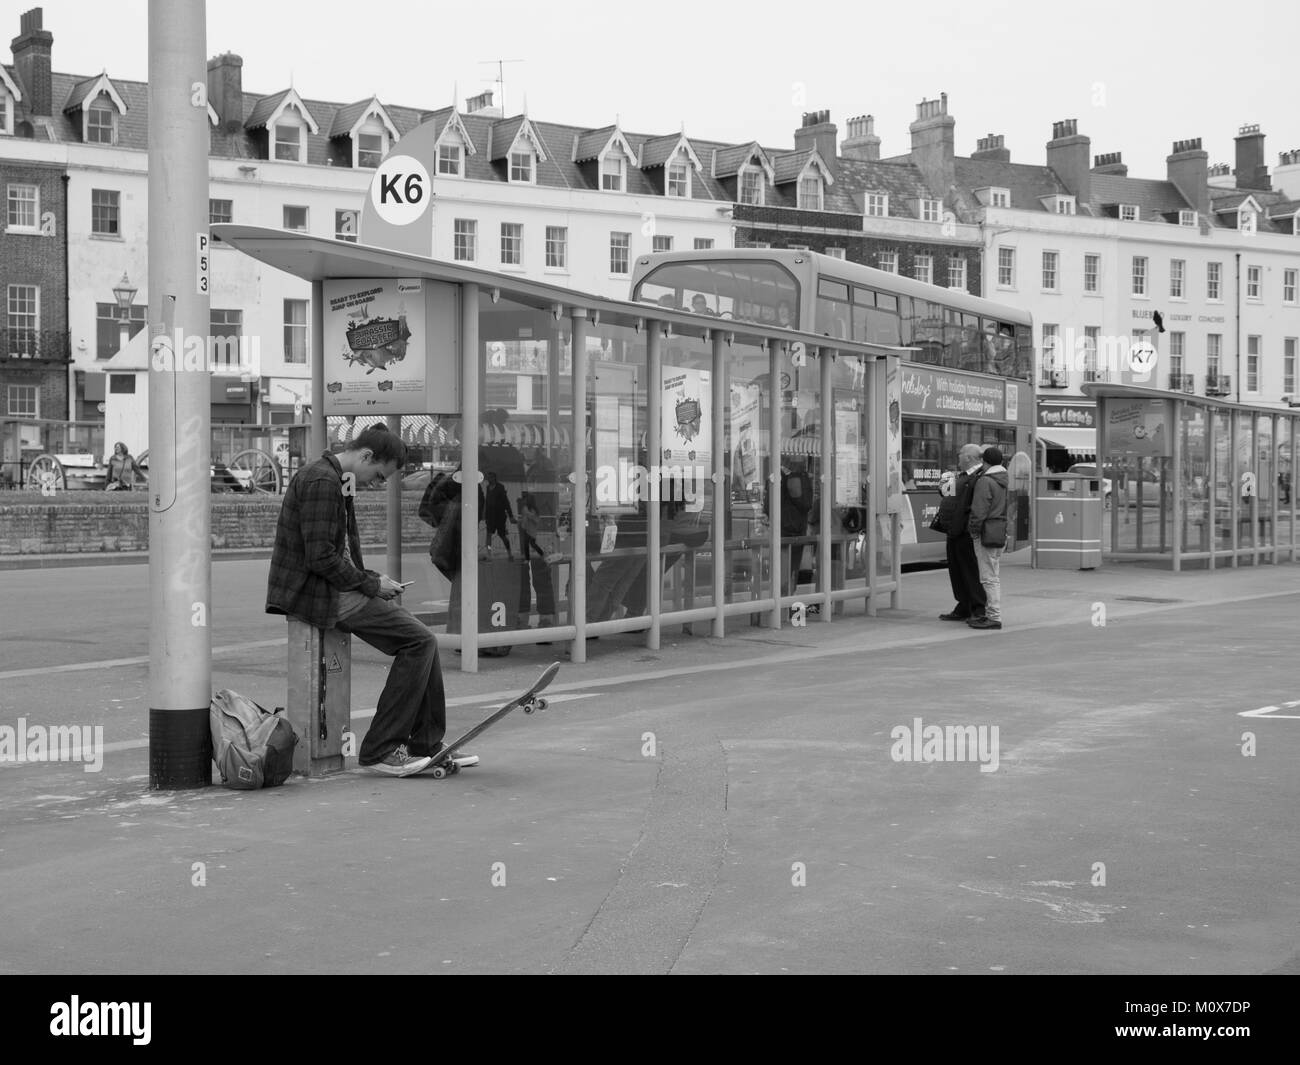 Jeune homme avec skateboard à l'arrêt de bus (monochrome) Banque D'Images